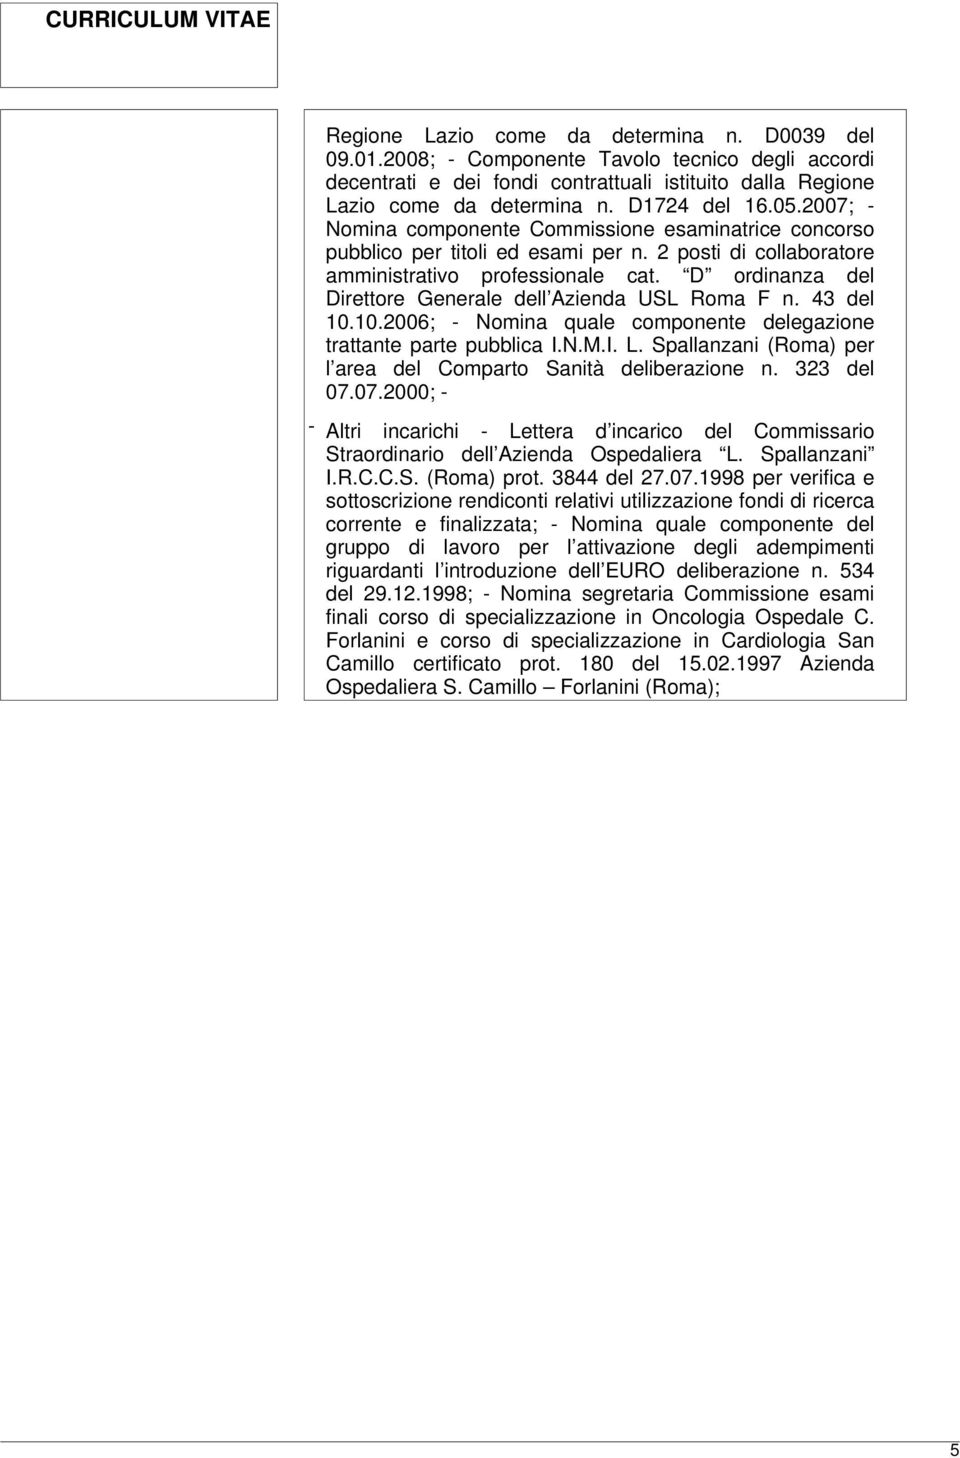 D ordinanza del Direttore Generale dell Azienda USL Roma F n. 43 del 10.10.2006; - Nomina quale componente delegazione trattante parte pubblica I.N.M.I. L.